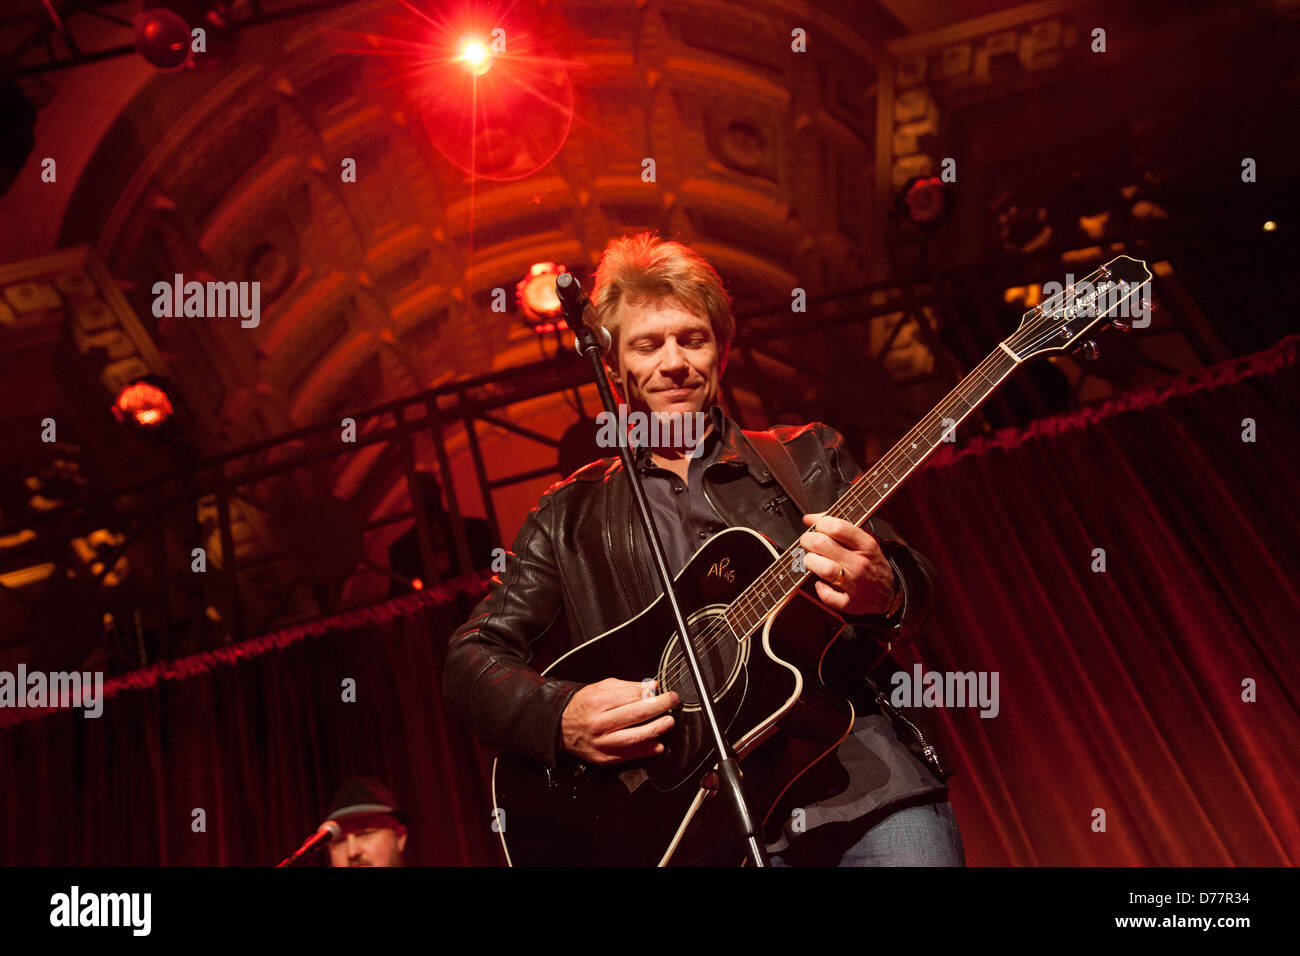 NEW YORK CITY, USA, 30 avril 2013. Le musicien Jon Bon Jovi procède à une collecte de fonds pour la banque alimentaire de la ville de New York au Cipriani Wall Street. Crédit : Erik Fuller Photography/Alamy Live News Banque D'Images